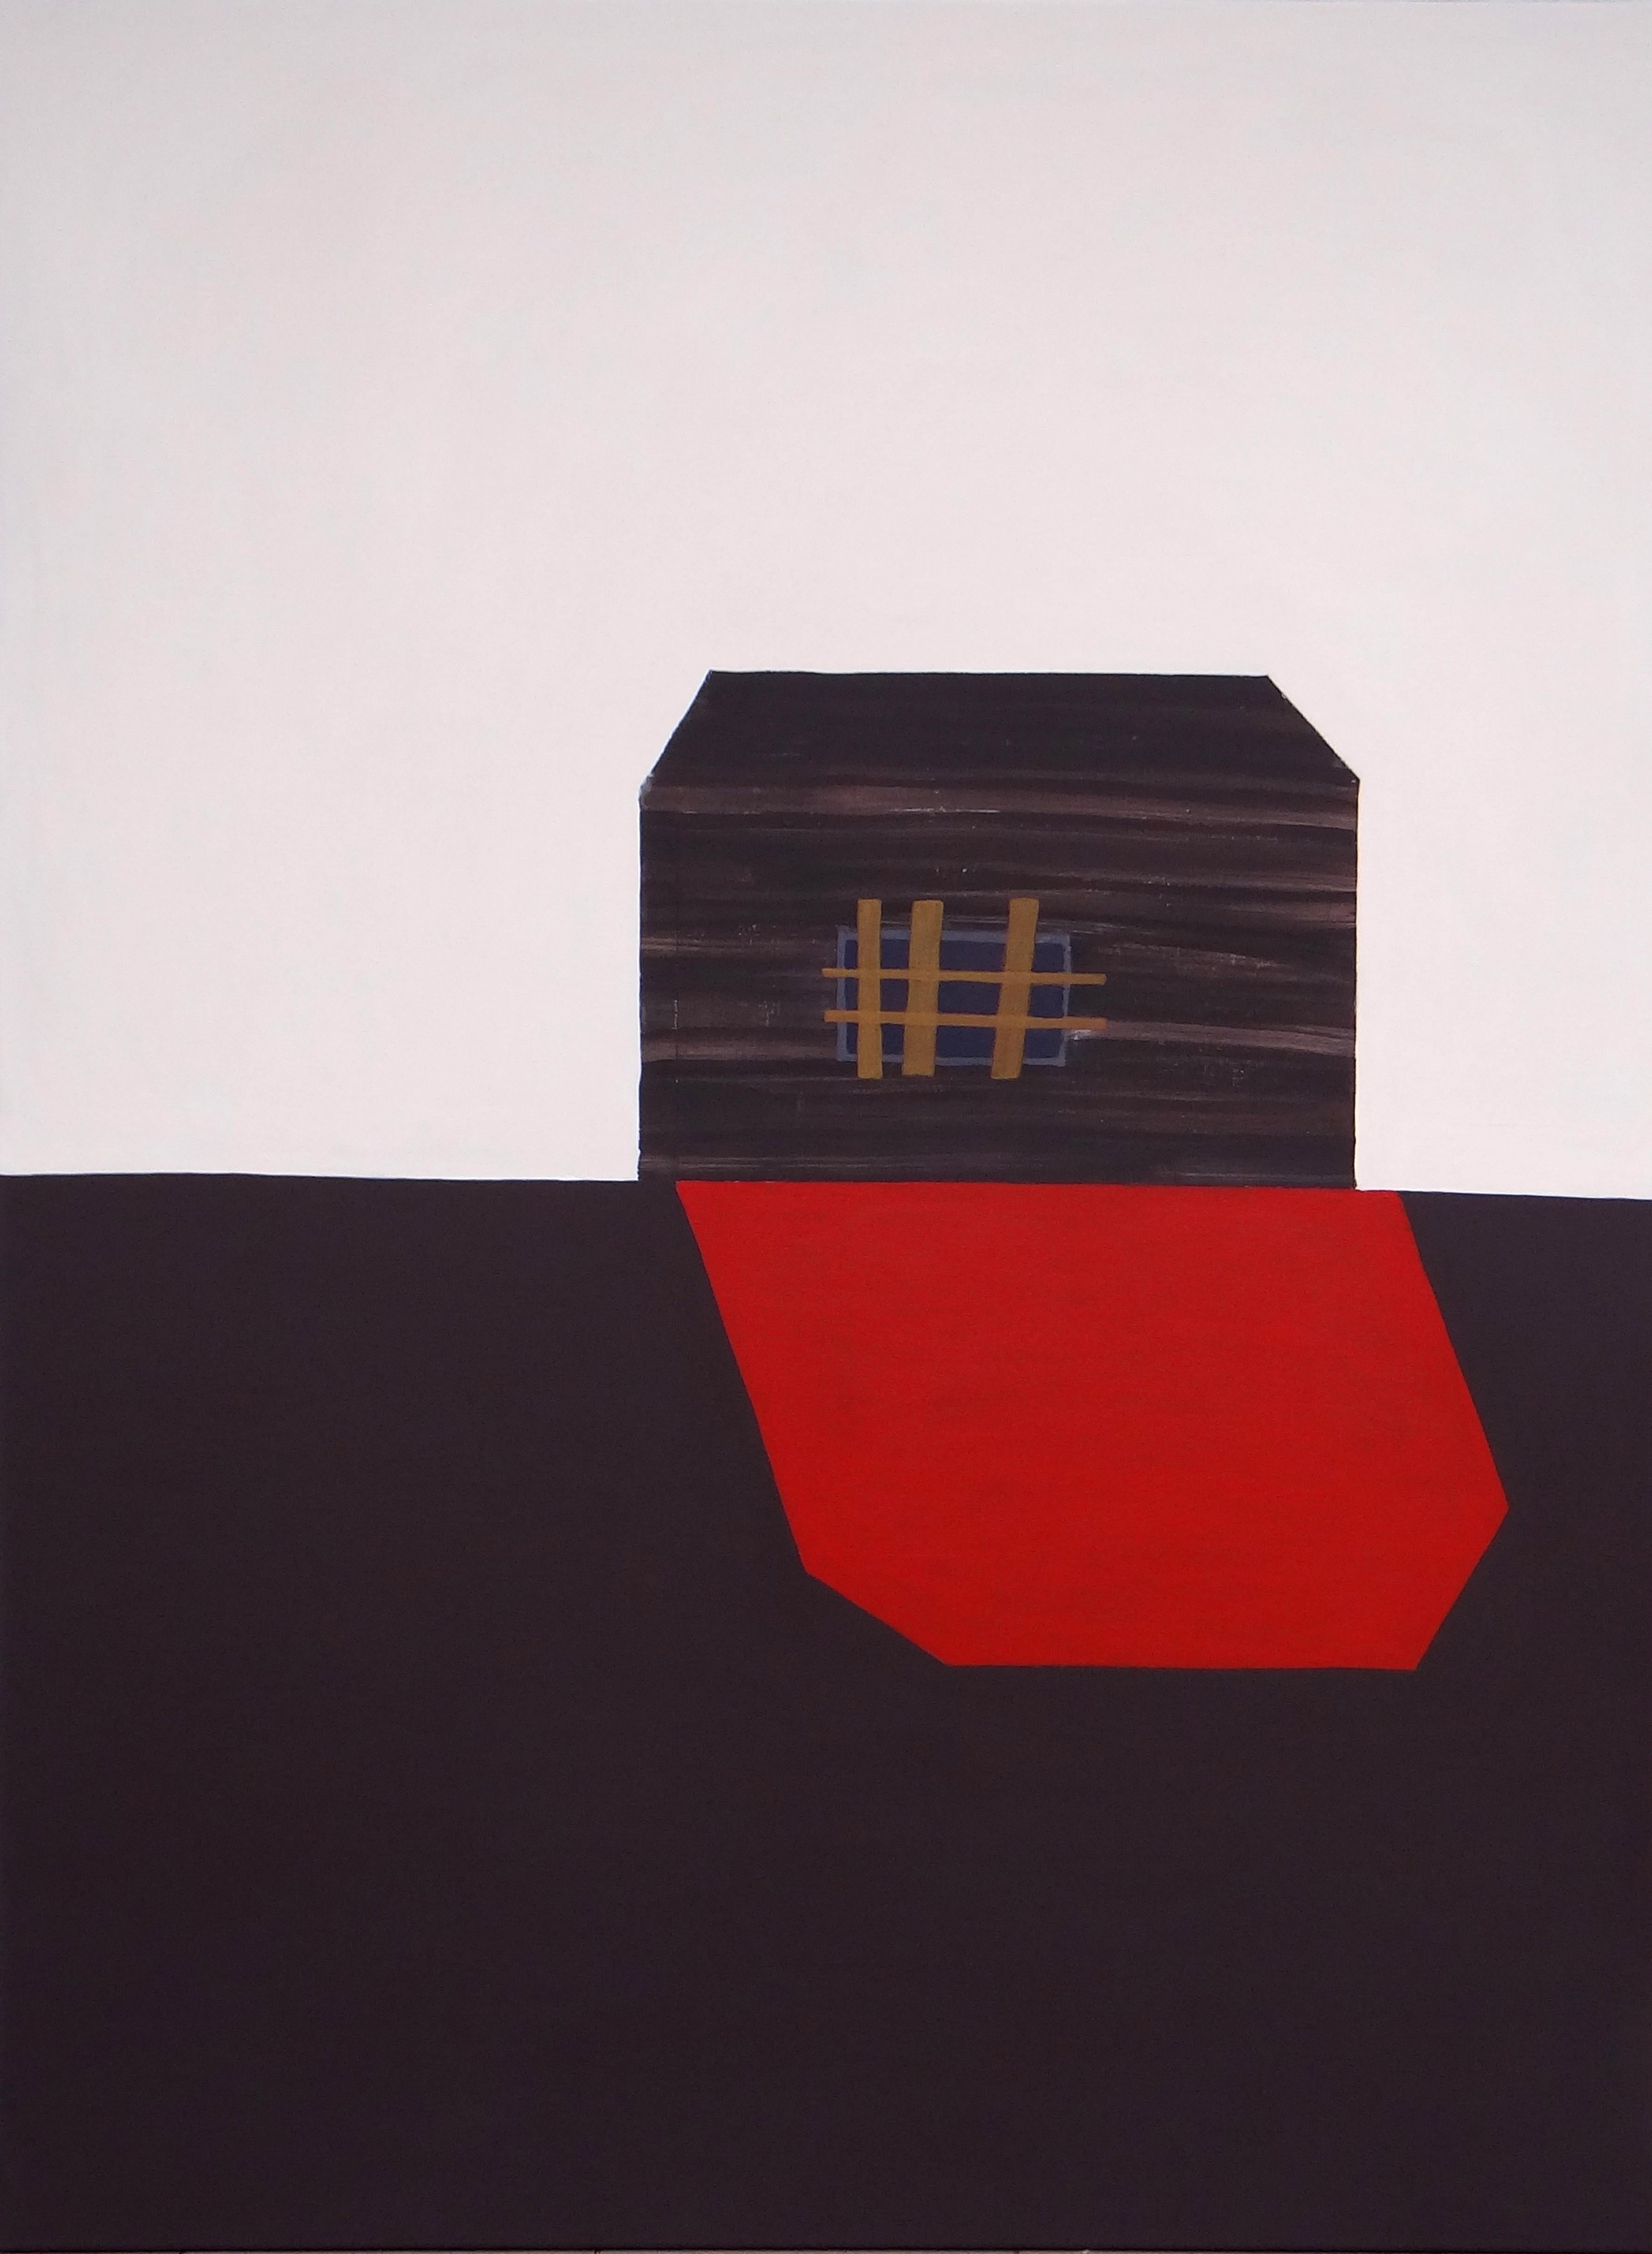 Joanna Mrozowska Abstract Painting – Roter Schatten  Modernes expressionistisches, minimalistisches Gemälde, großformatig